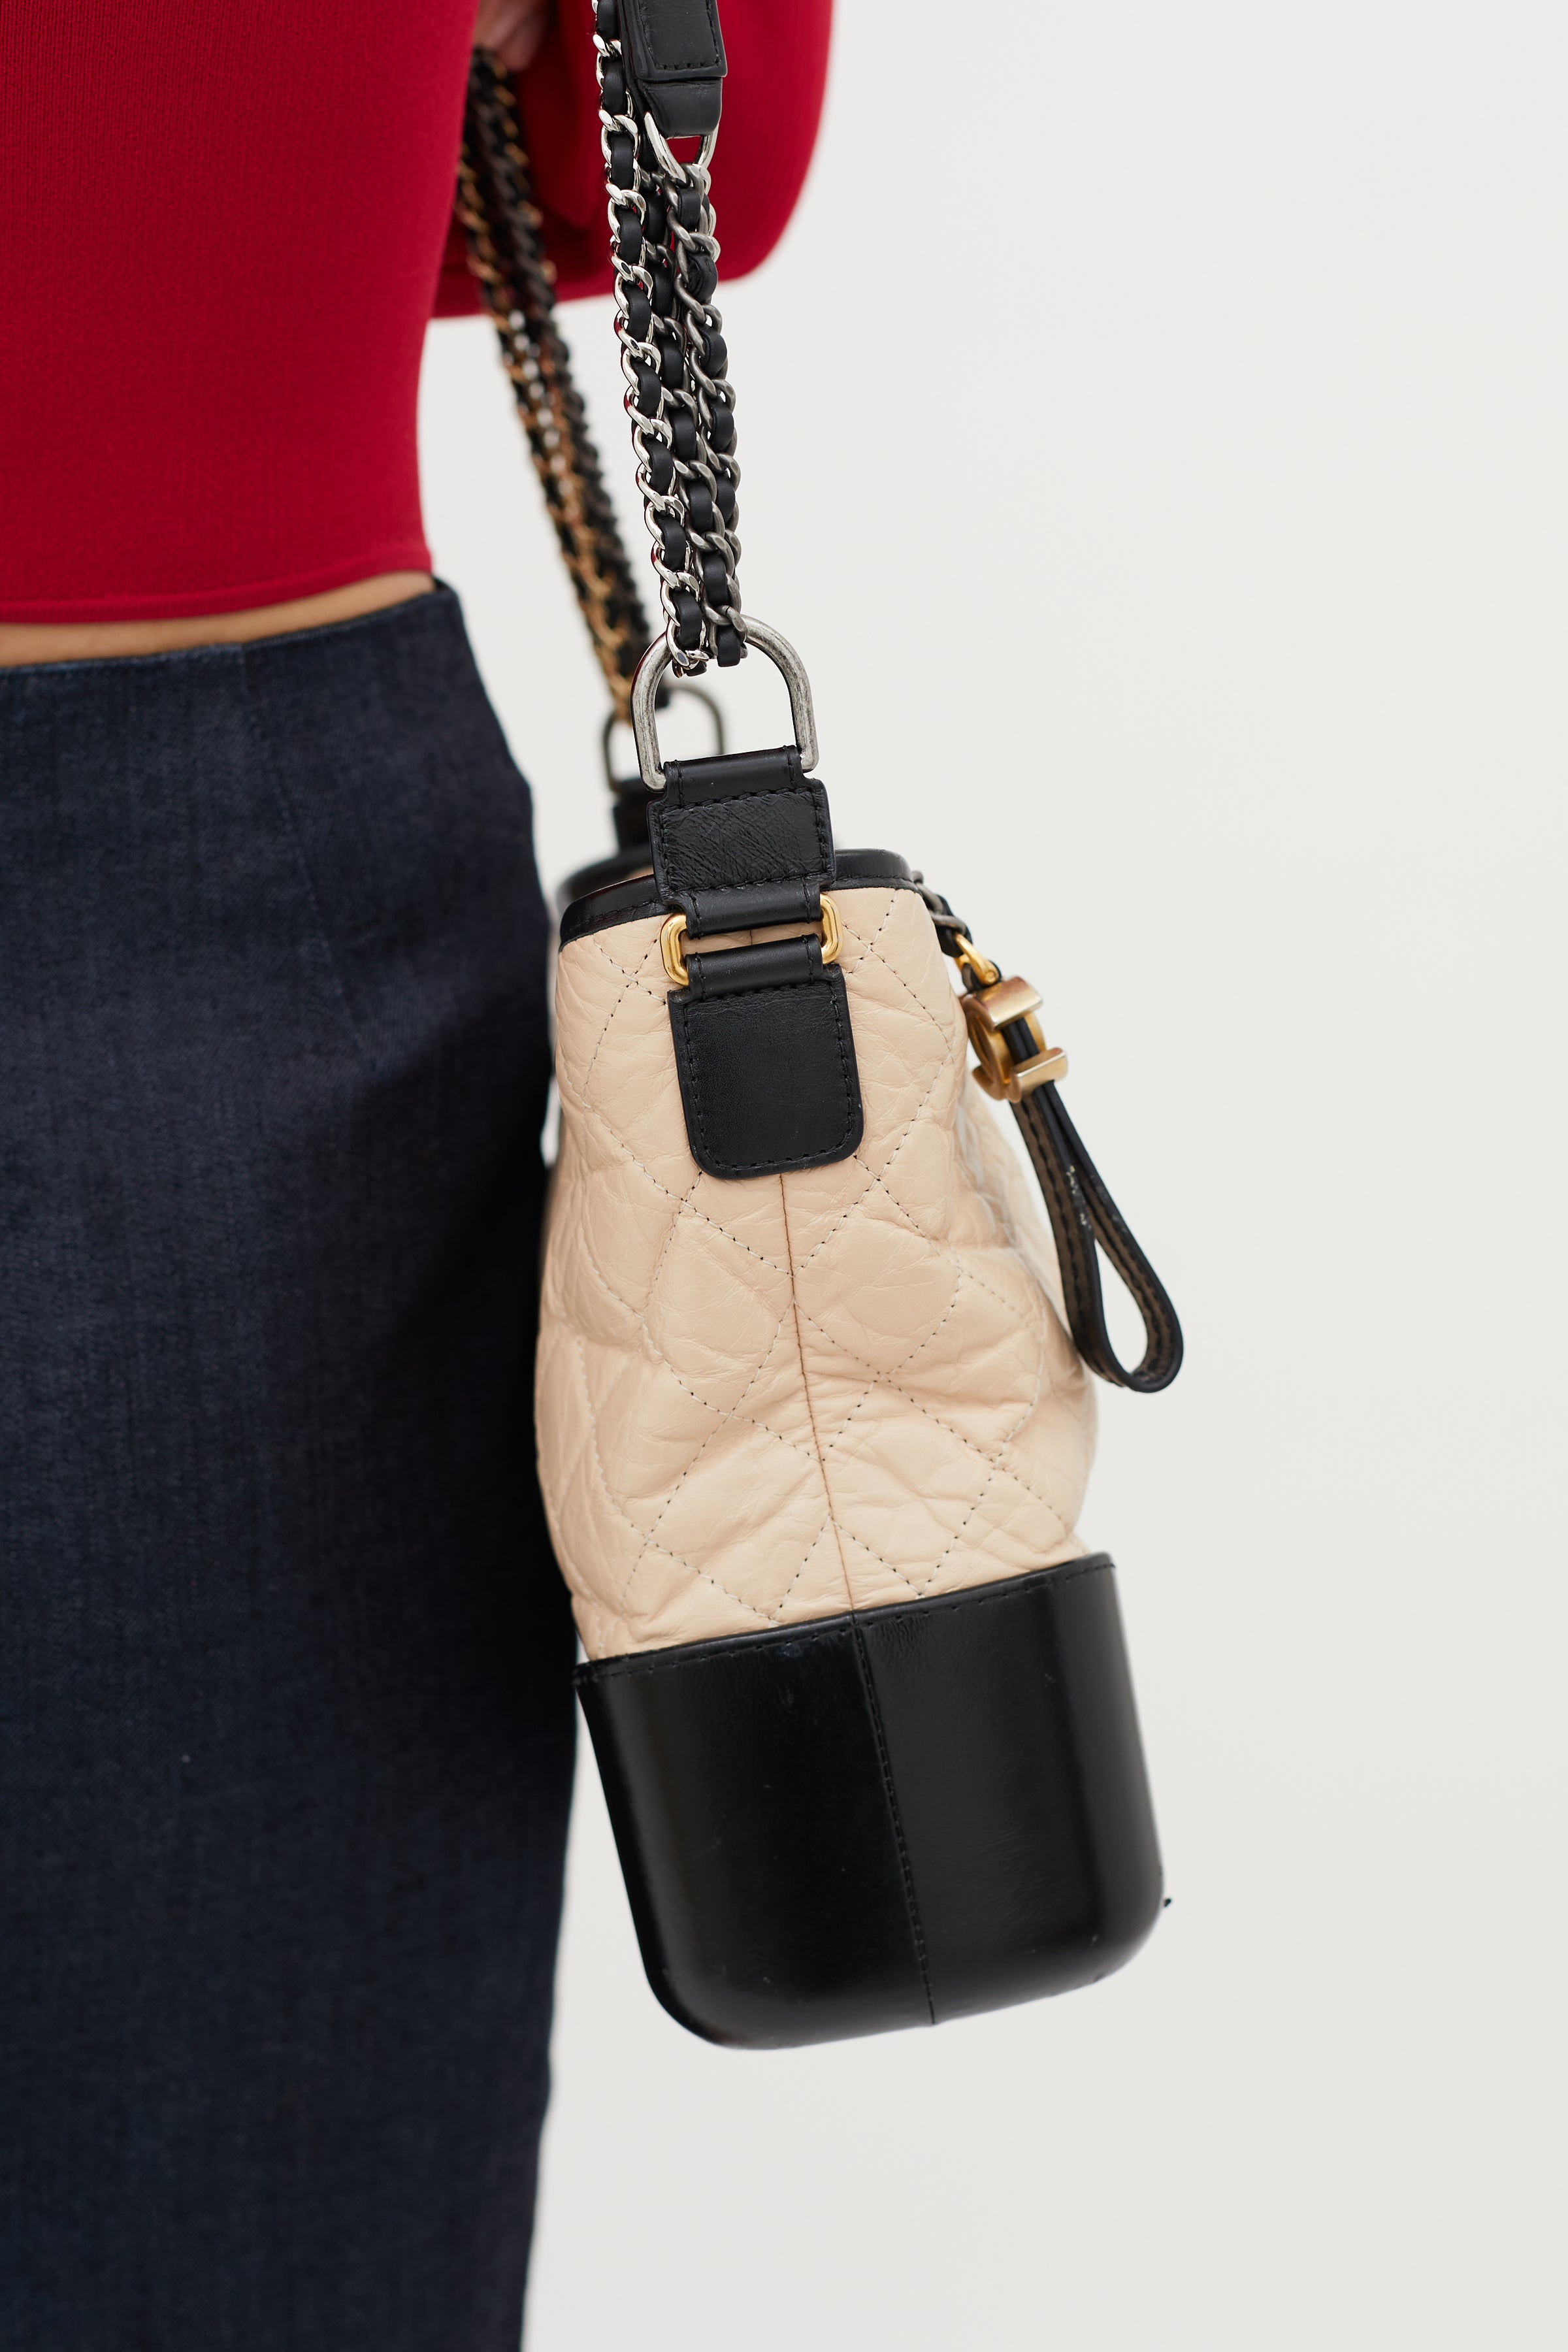 Chanel Beige & Black Gabrielle Large Shoulder Bag